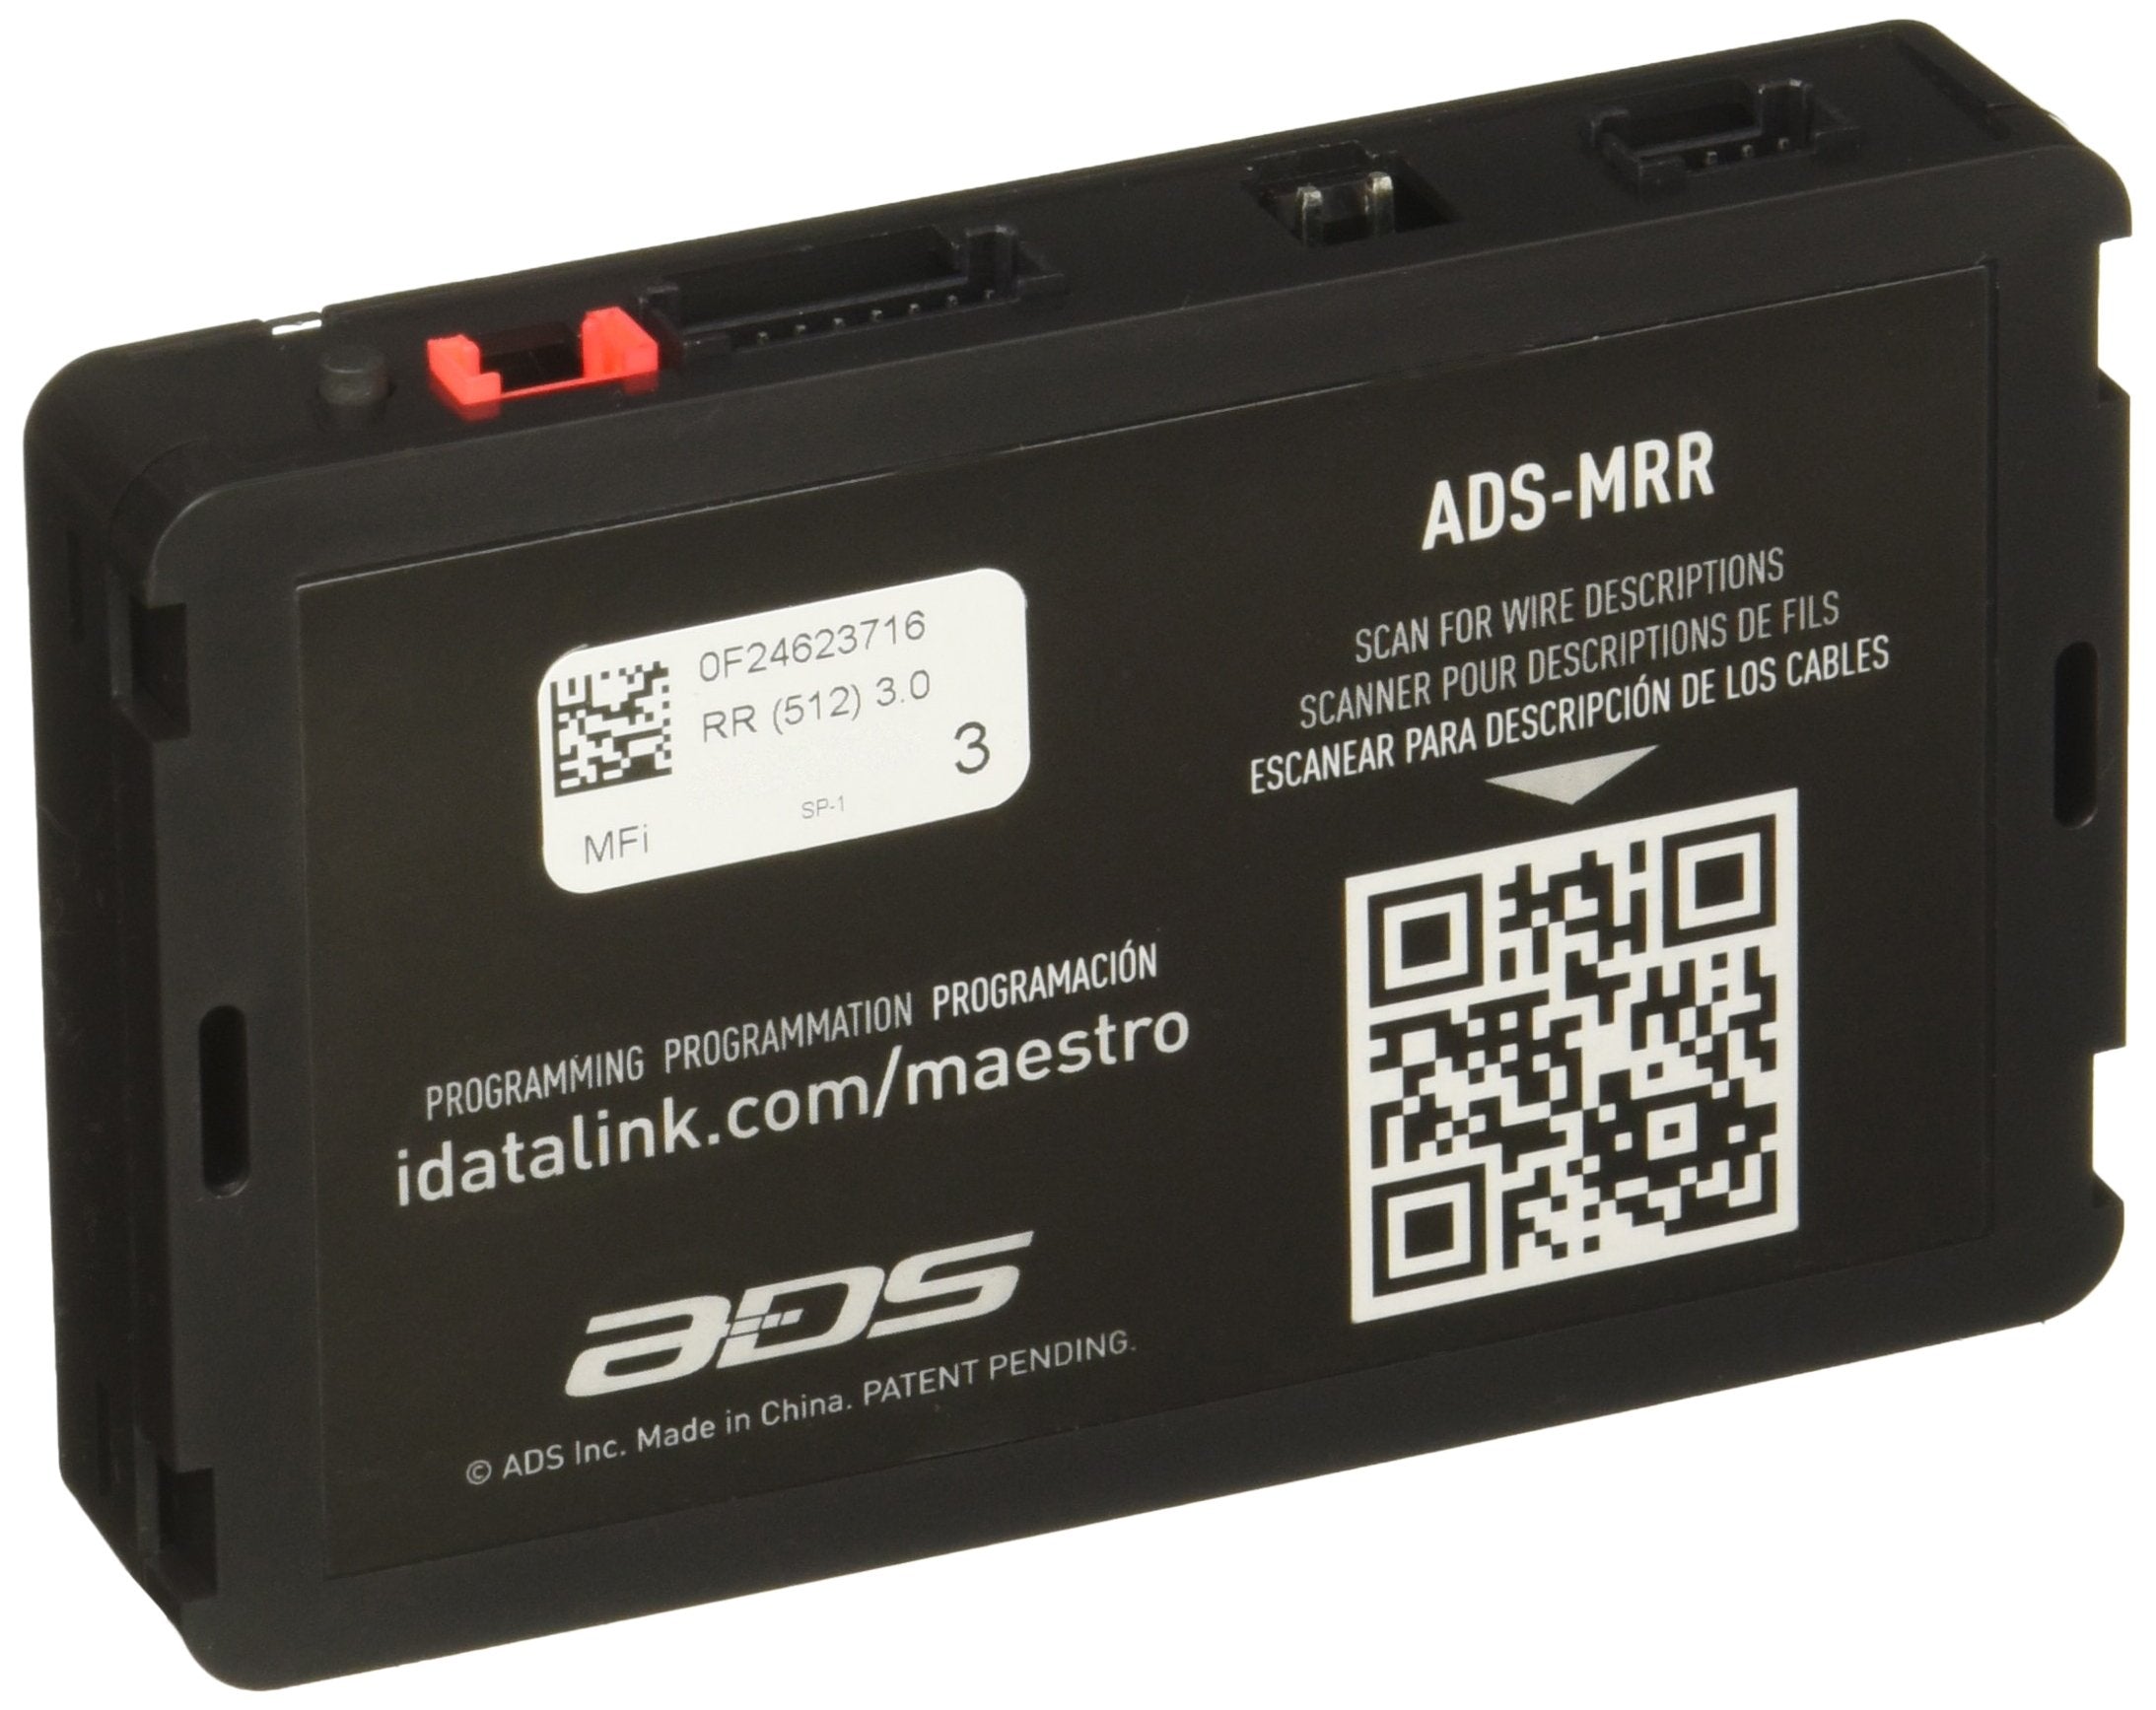 iDatalink Maestro ADS-MRR Radio Replacement & Steering Wheel Interface (ADSMRR)